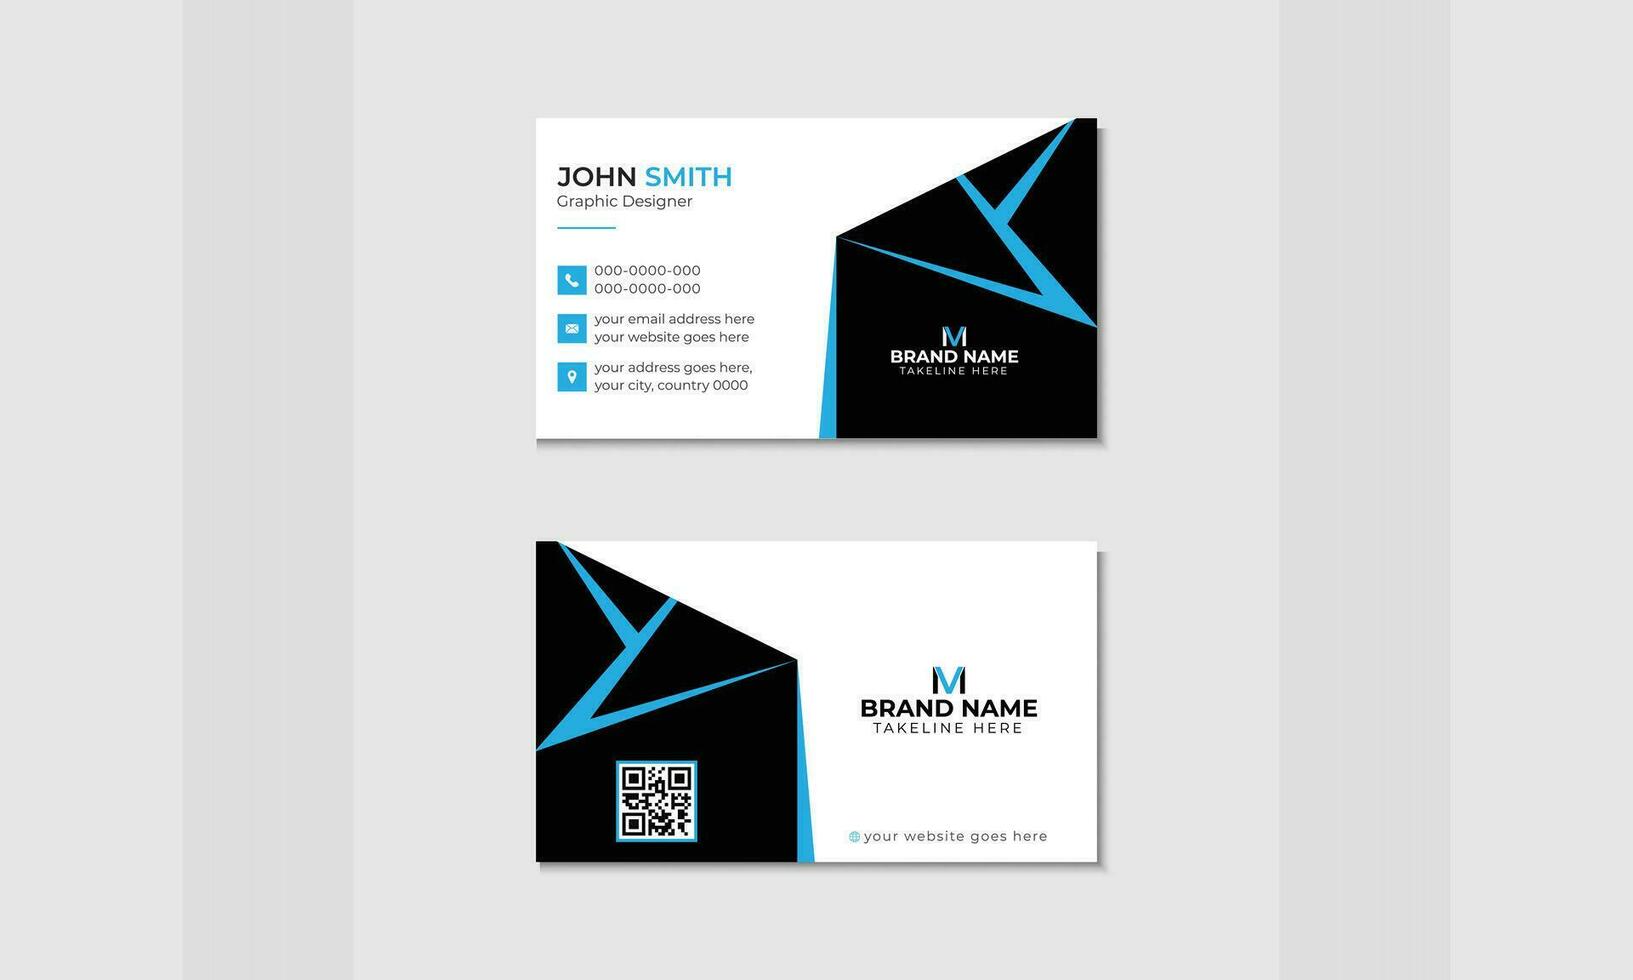 diseño para un moderno, sencillo negocio tarjeta con el organización logo del visitante tarjeta modelo en vector formato para ambos profesional y personal usar.